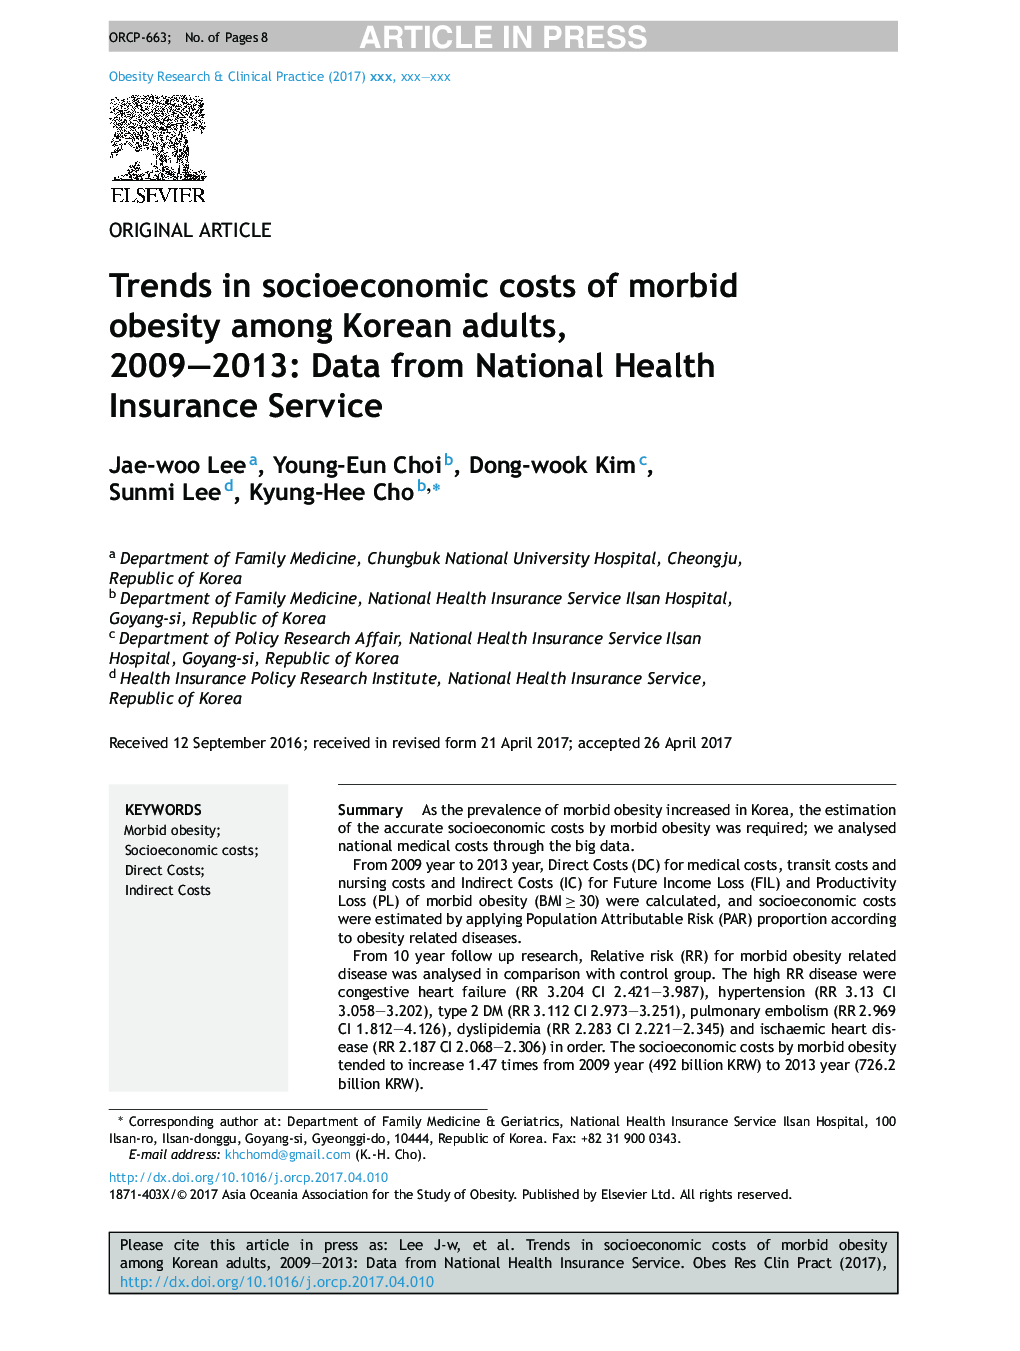 روند در هزینه های اجتماعی اقتصادی از چاقی مفرط در بین بزرگسالان کره ای، 2009-2013: داده ها از خدمات ملی خدمات بهداشتی 